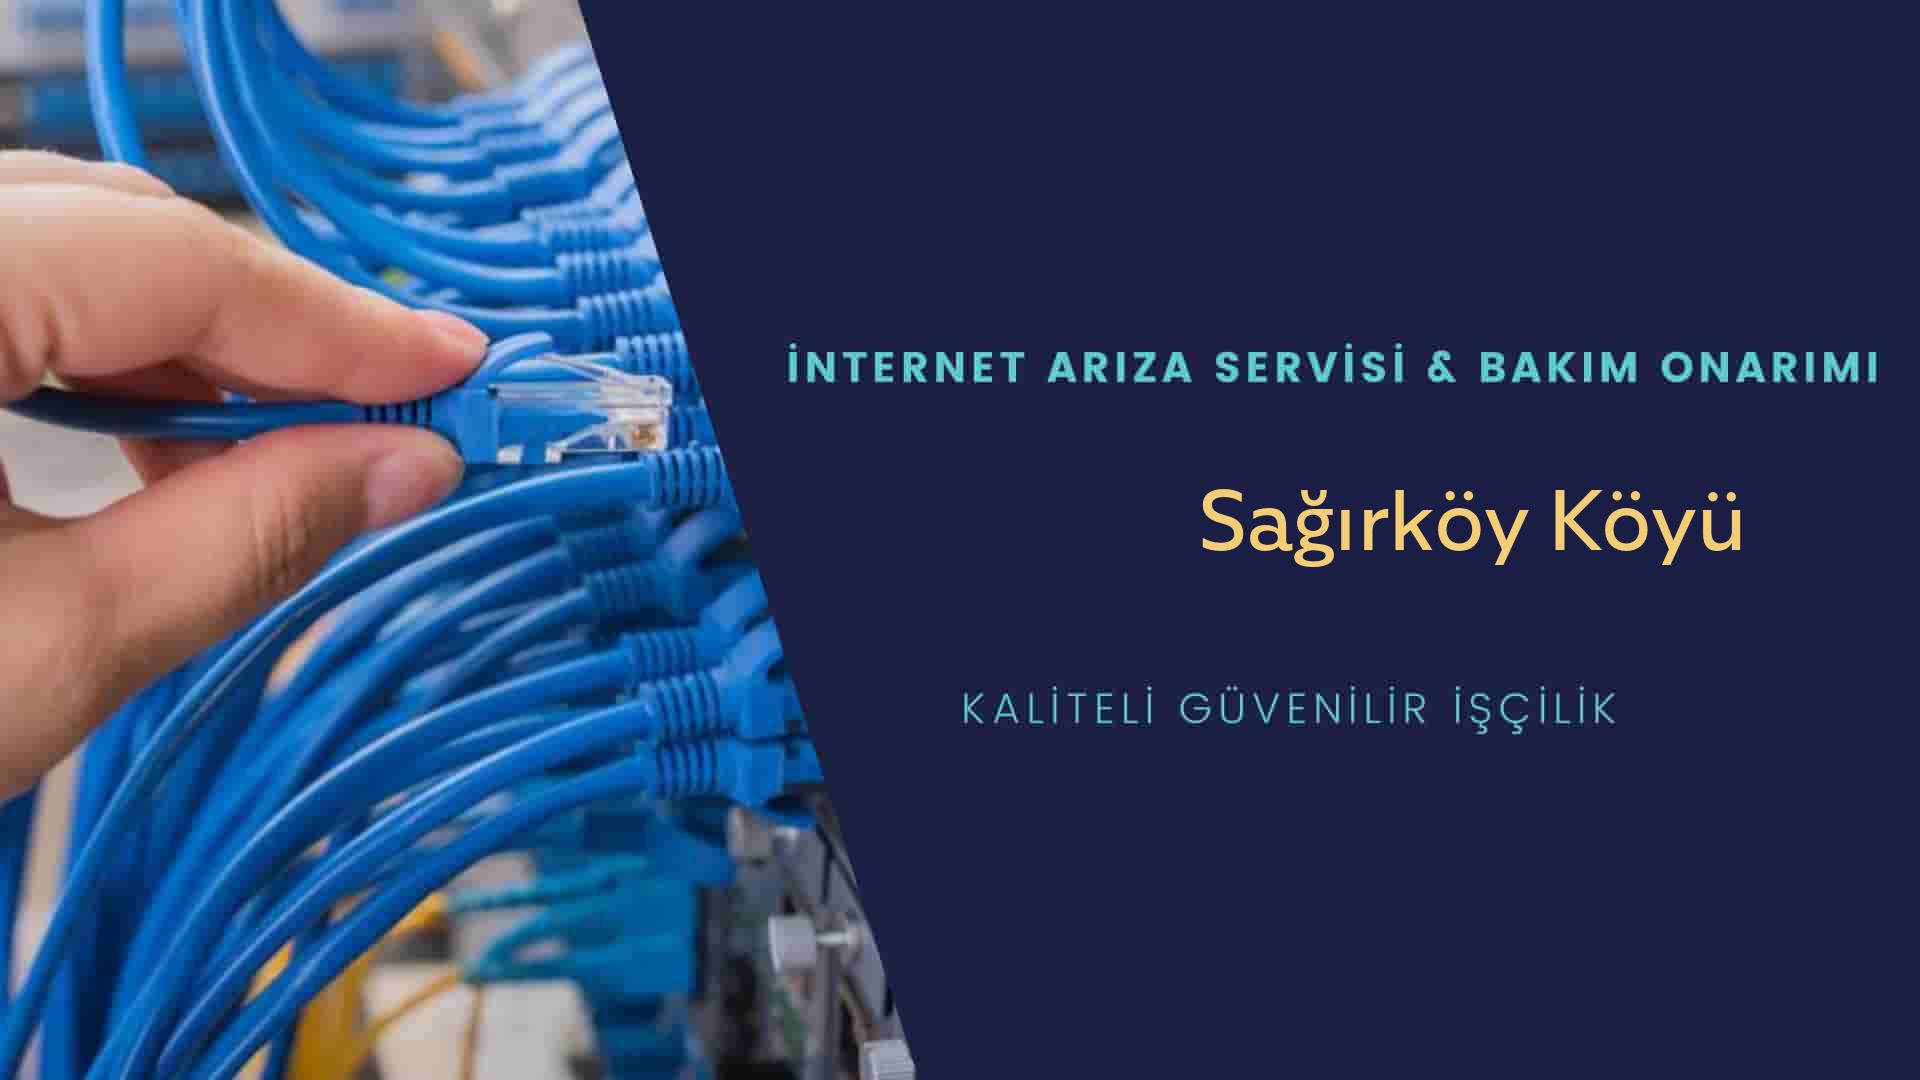 Sağırköy Köyü internet kablosu çekimi yapan yerler veya elektrikçiler mi? arıyorsunuz doğru yerdesiniz o zaman sizlere 7/24 yardımcı olacak profesyonel ustalarımız bir telefon kadar yakındır size.